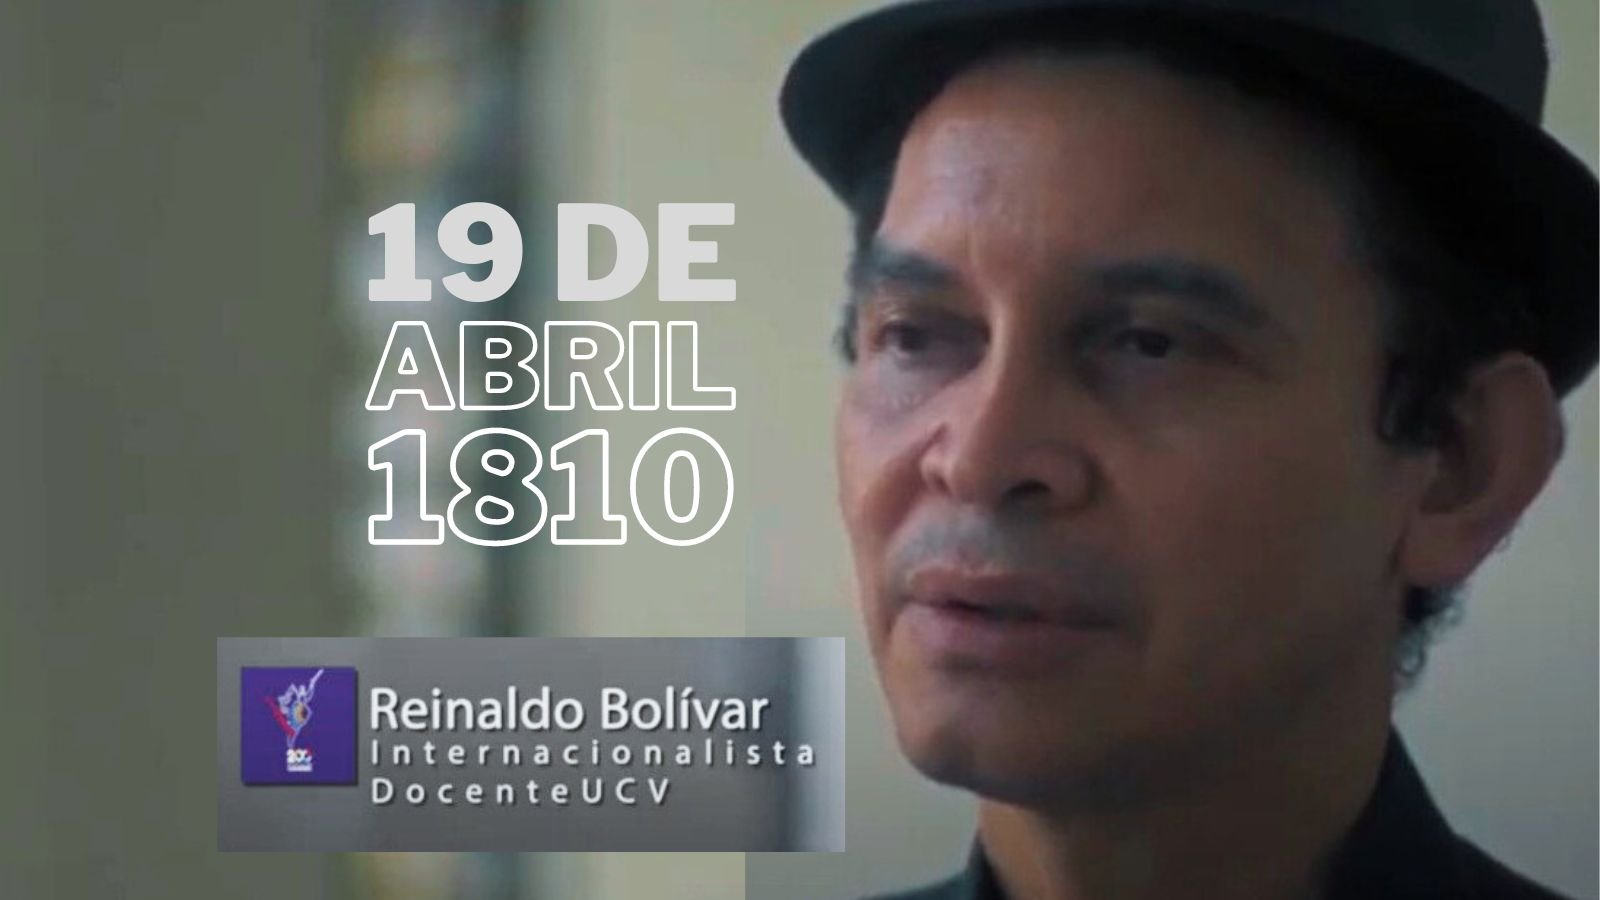 19 de abril de 1810. Prof. Reinaldo Bolívar. Caracas Insurgente